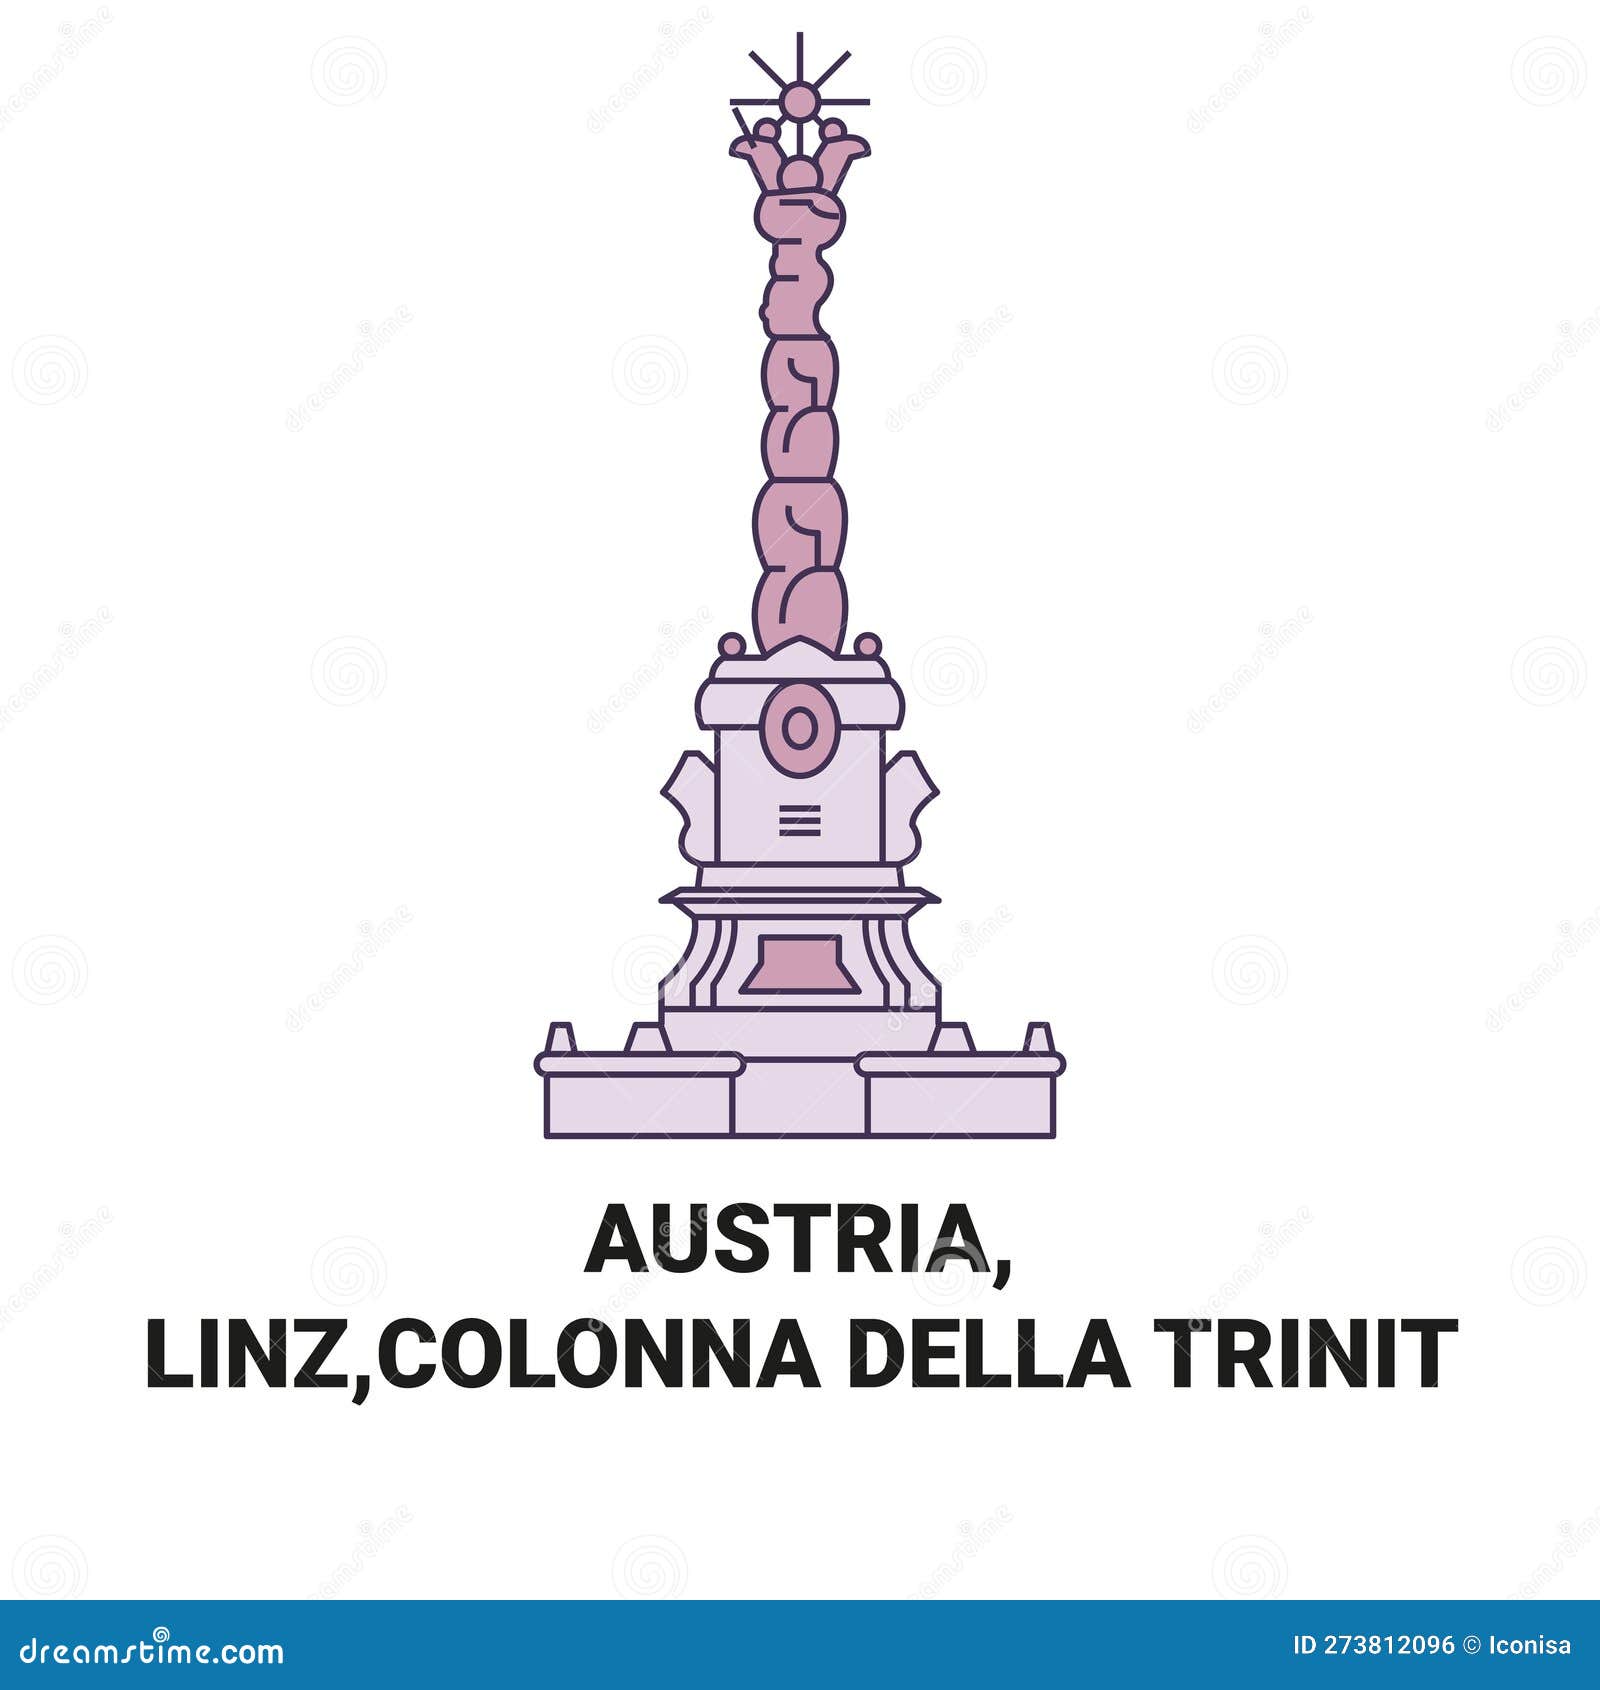 austria, linz,colonna della trinit travel landmark  